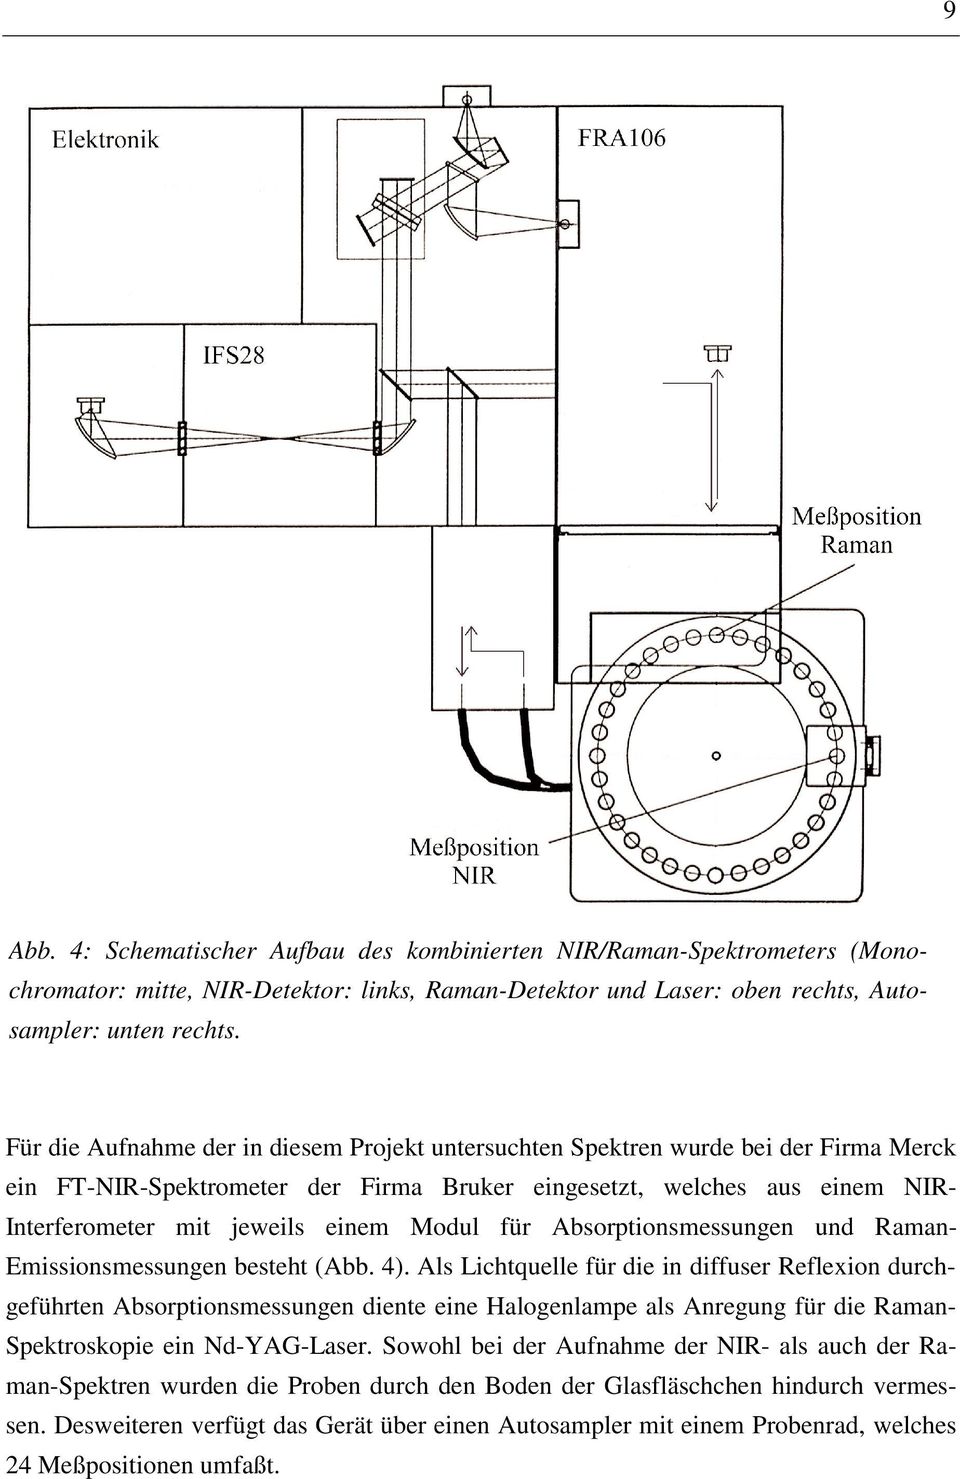 Modul für Absorptionsmessungen und Raman- Emissionsmessungen besteht (Abb. 4).